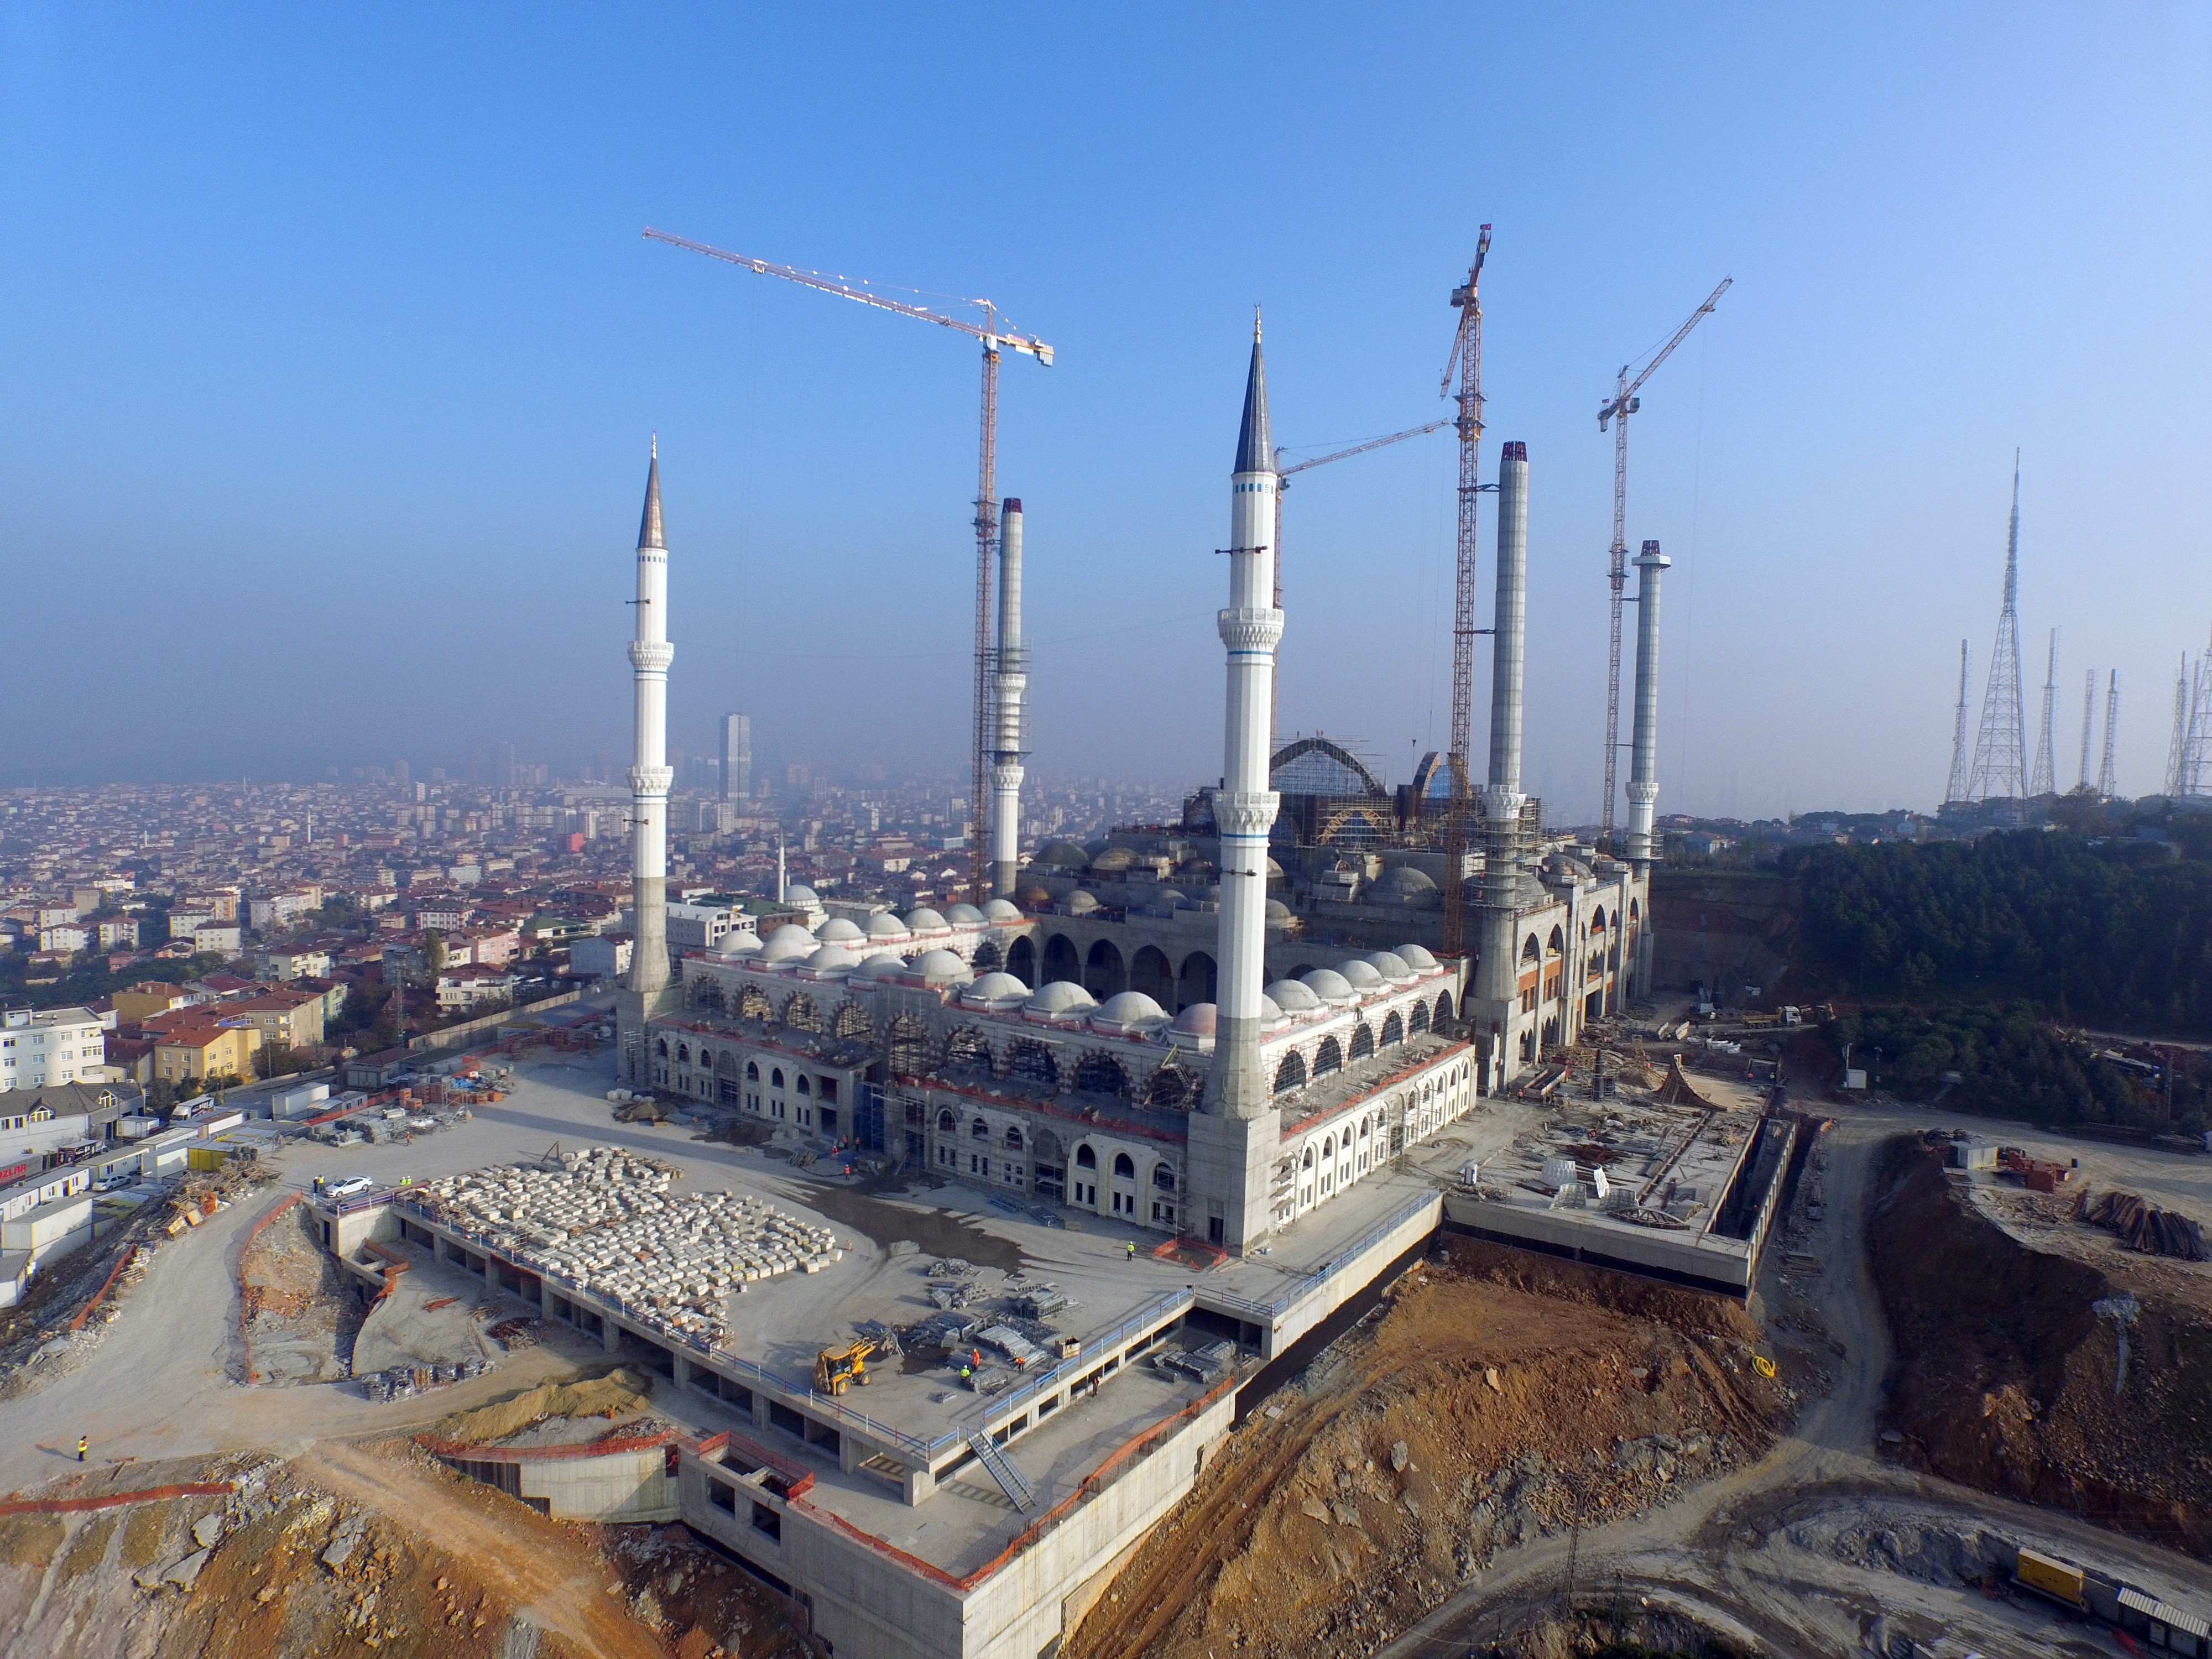 Temeli 6 Ağustos 2013'te atılan Cumhuriyet tarihinin en büyük cami projesi Çamlıca Camisi'nin kaba inşaatının yüzde 95'i tamamlandı. (Umut Özgan - Anadolu Ajansı)